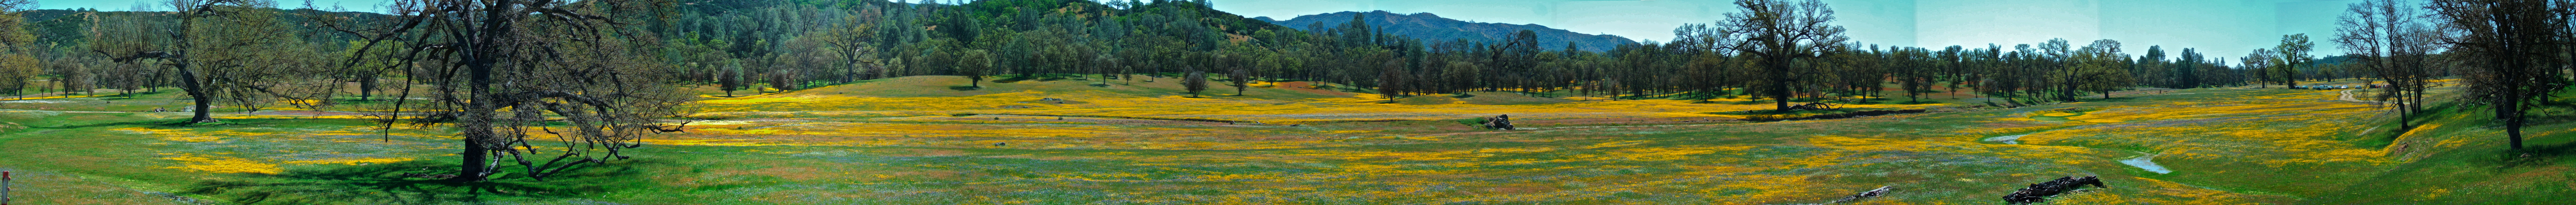 Wildflowers in Upper San Antonio Valley (1).